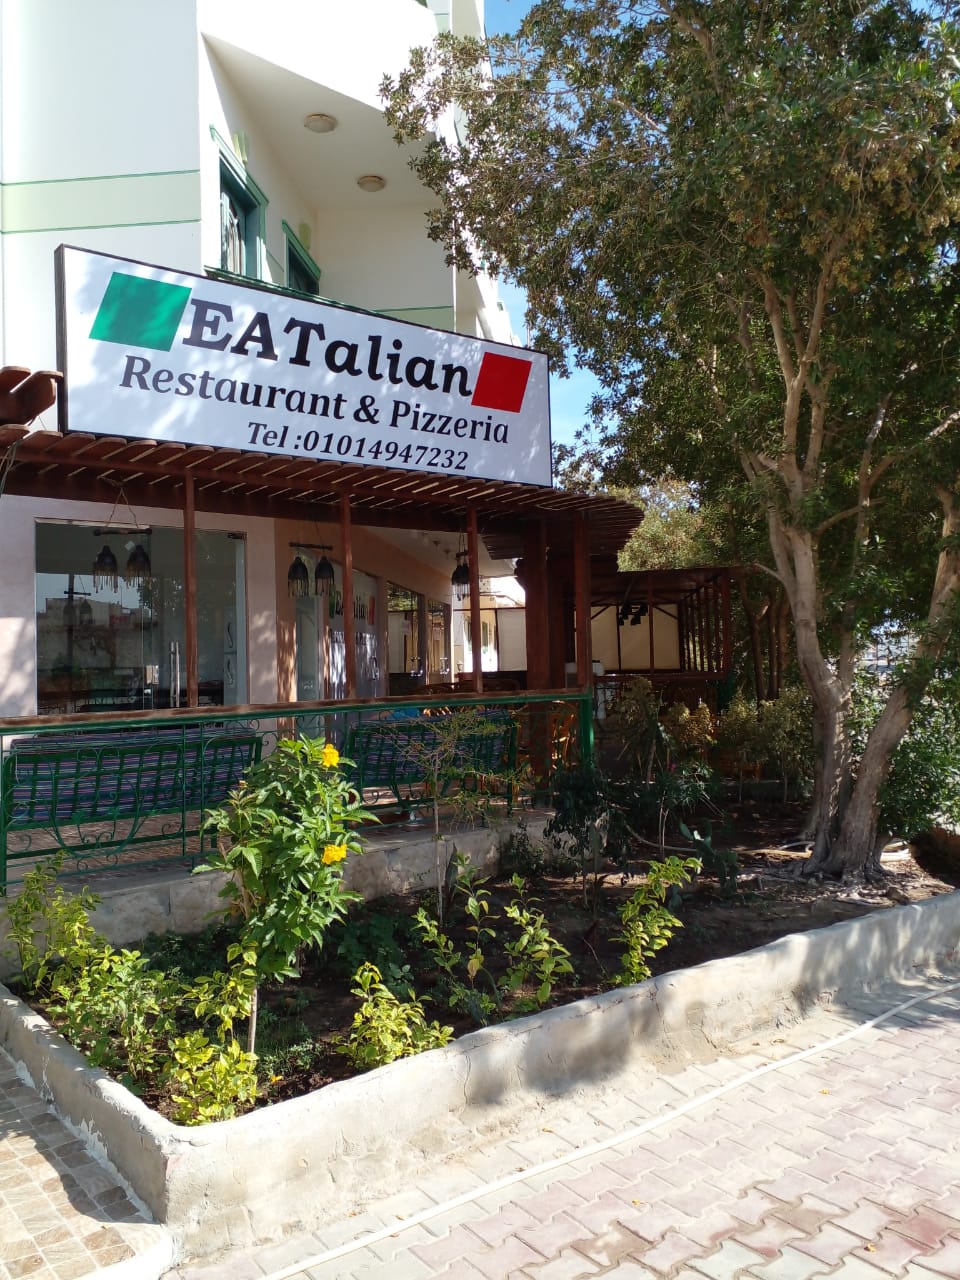 Eatalian Restaurant & Pizzeria